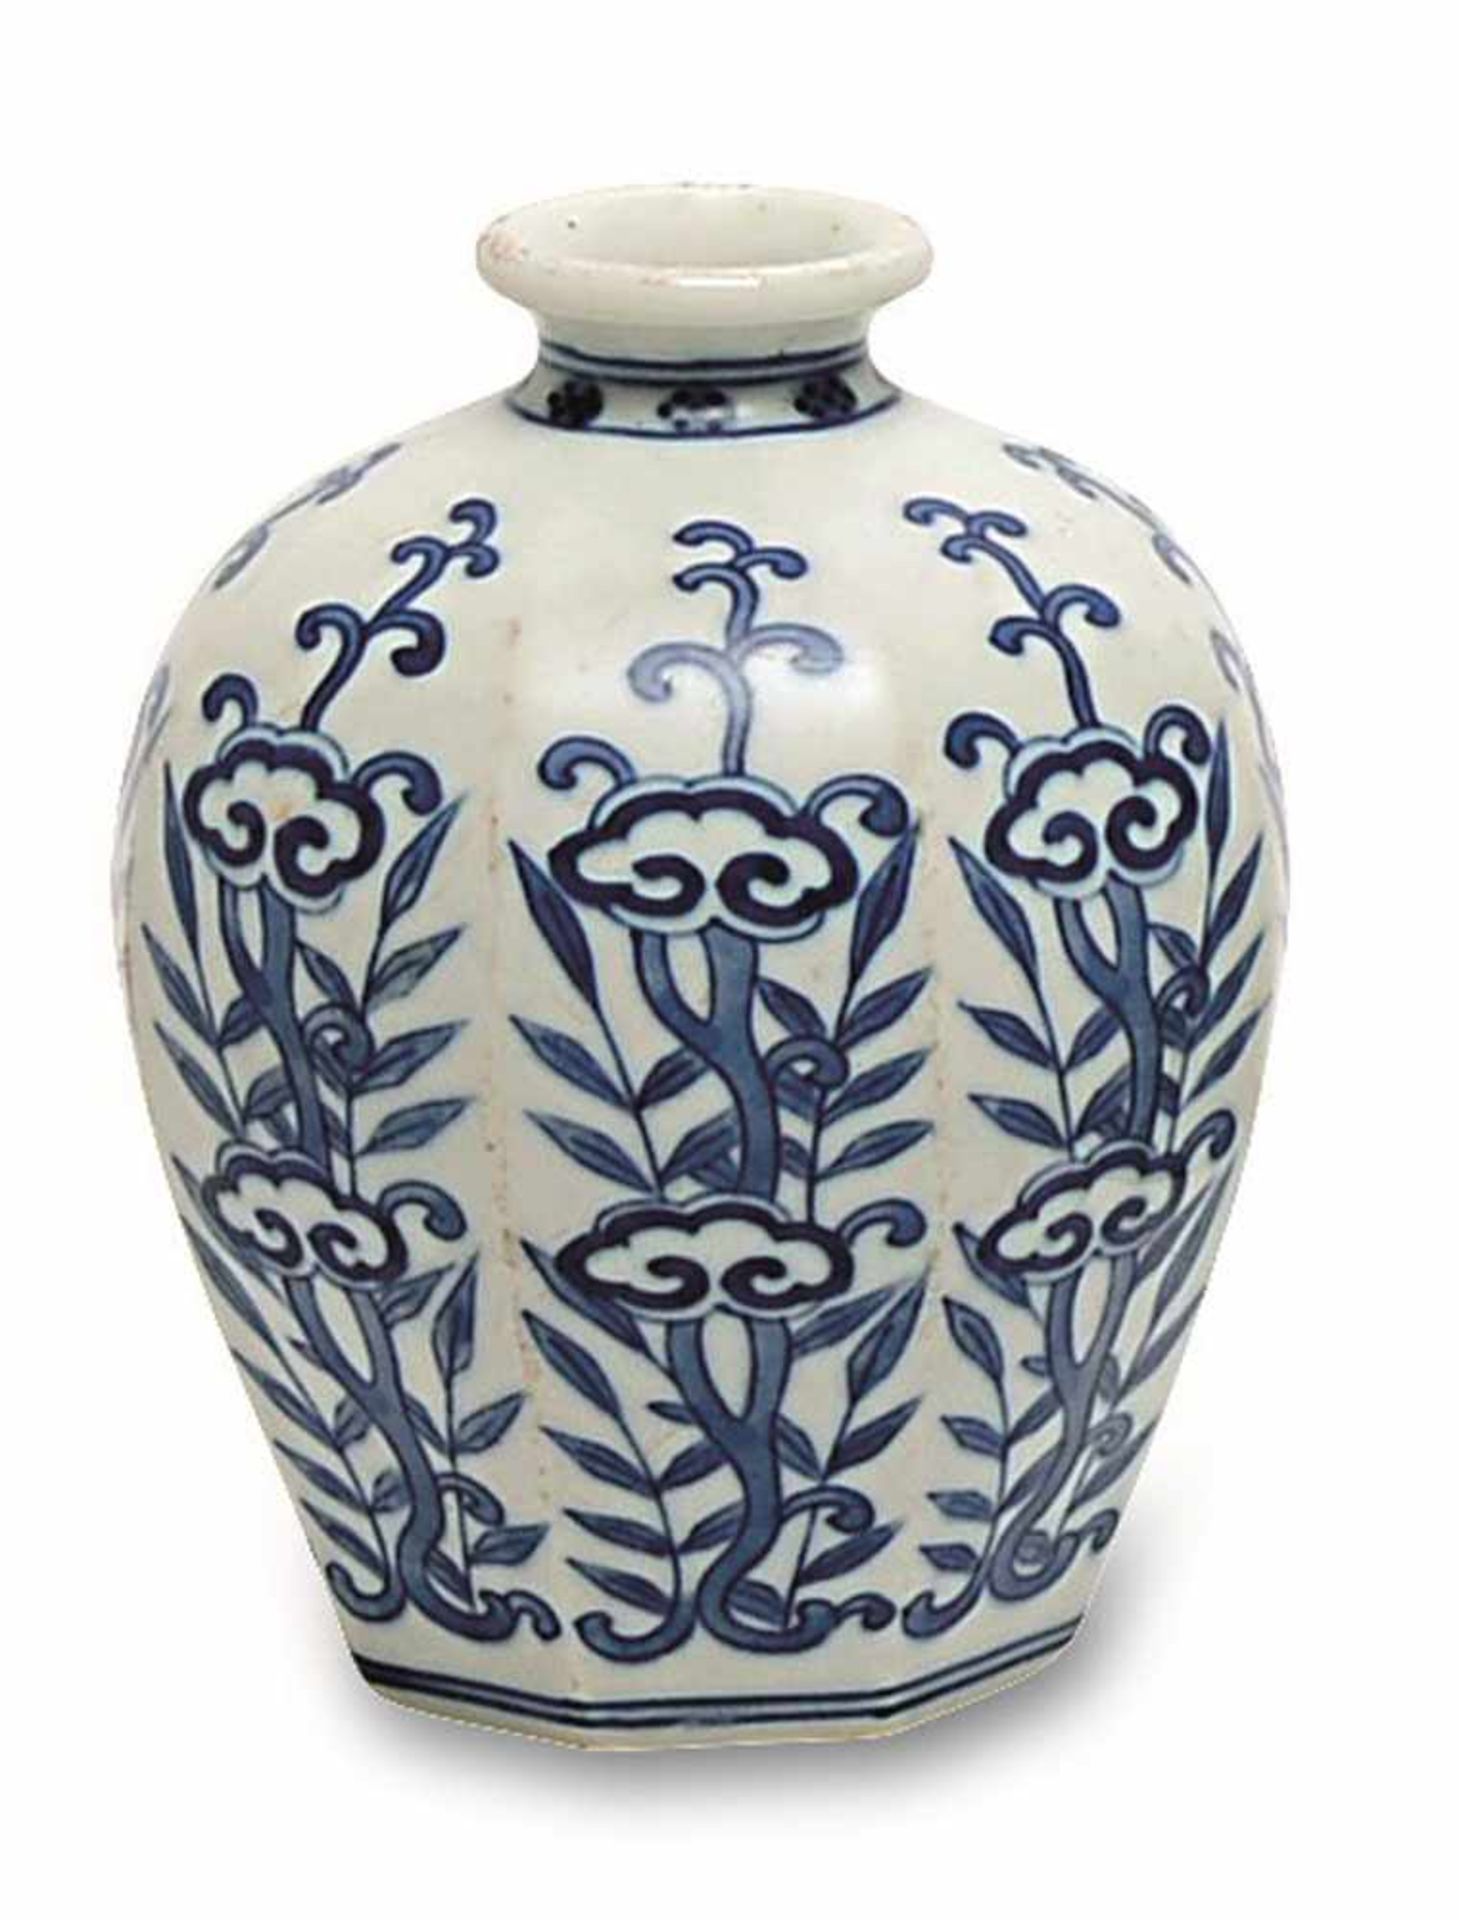 Kleine Vase China, wohl Qing Porzellan. Bauchige, facettierte Form mit floralem Blaudekor.